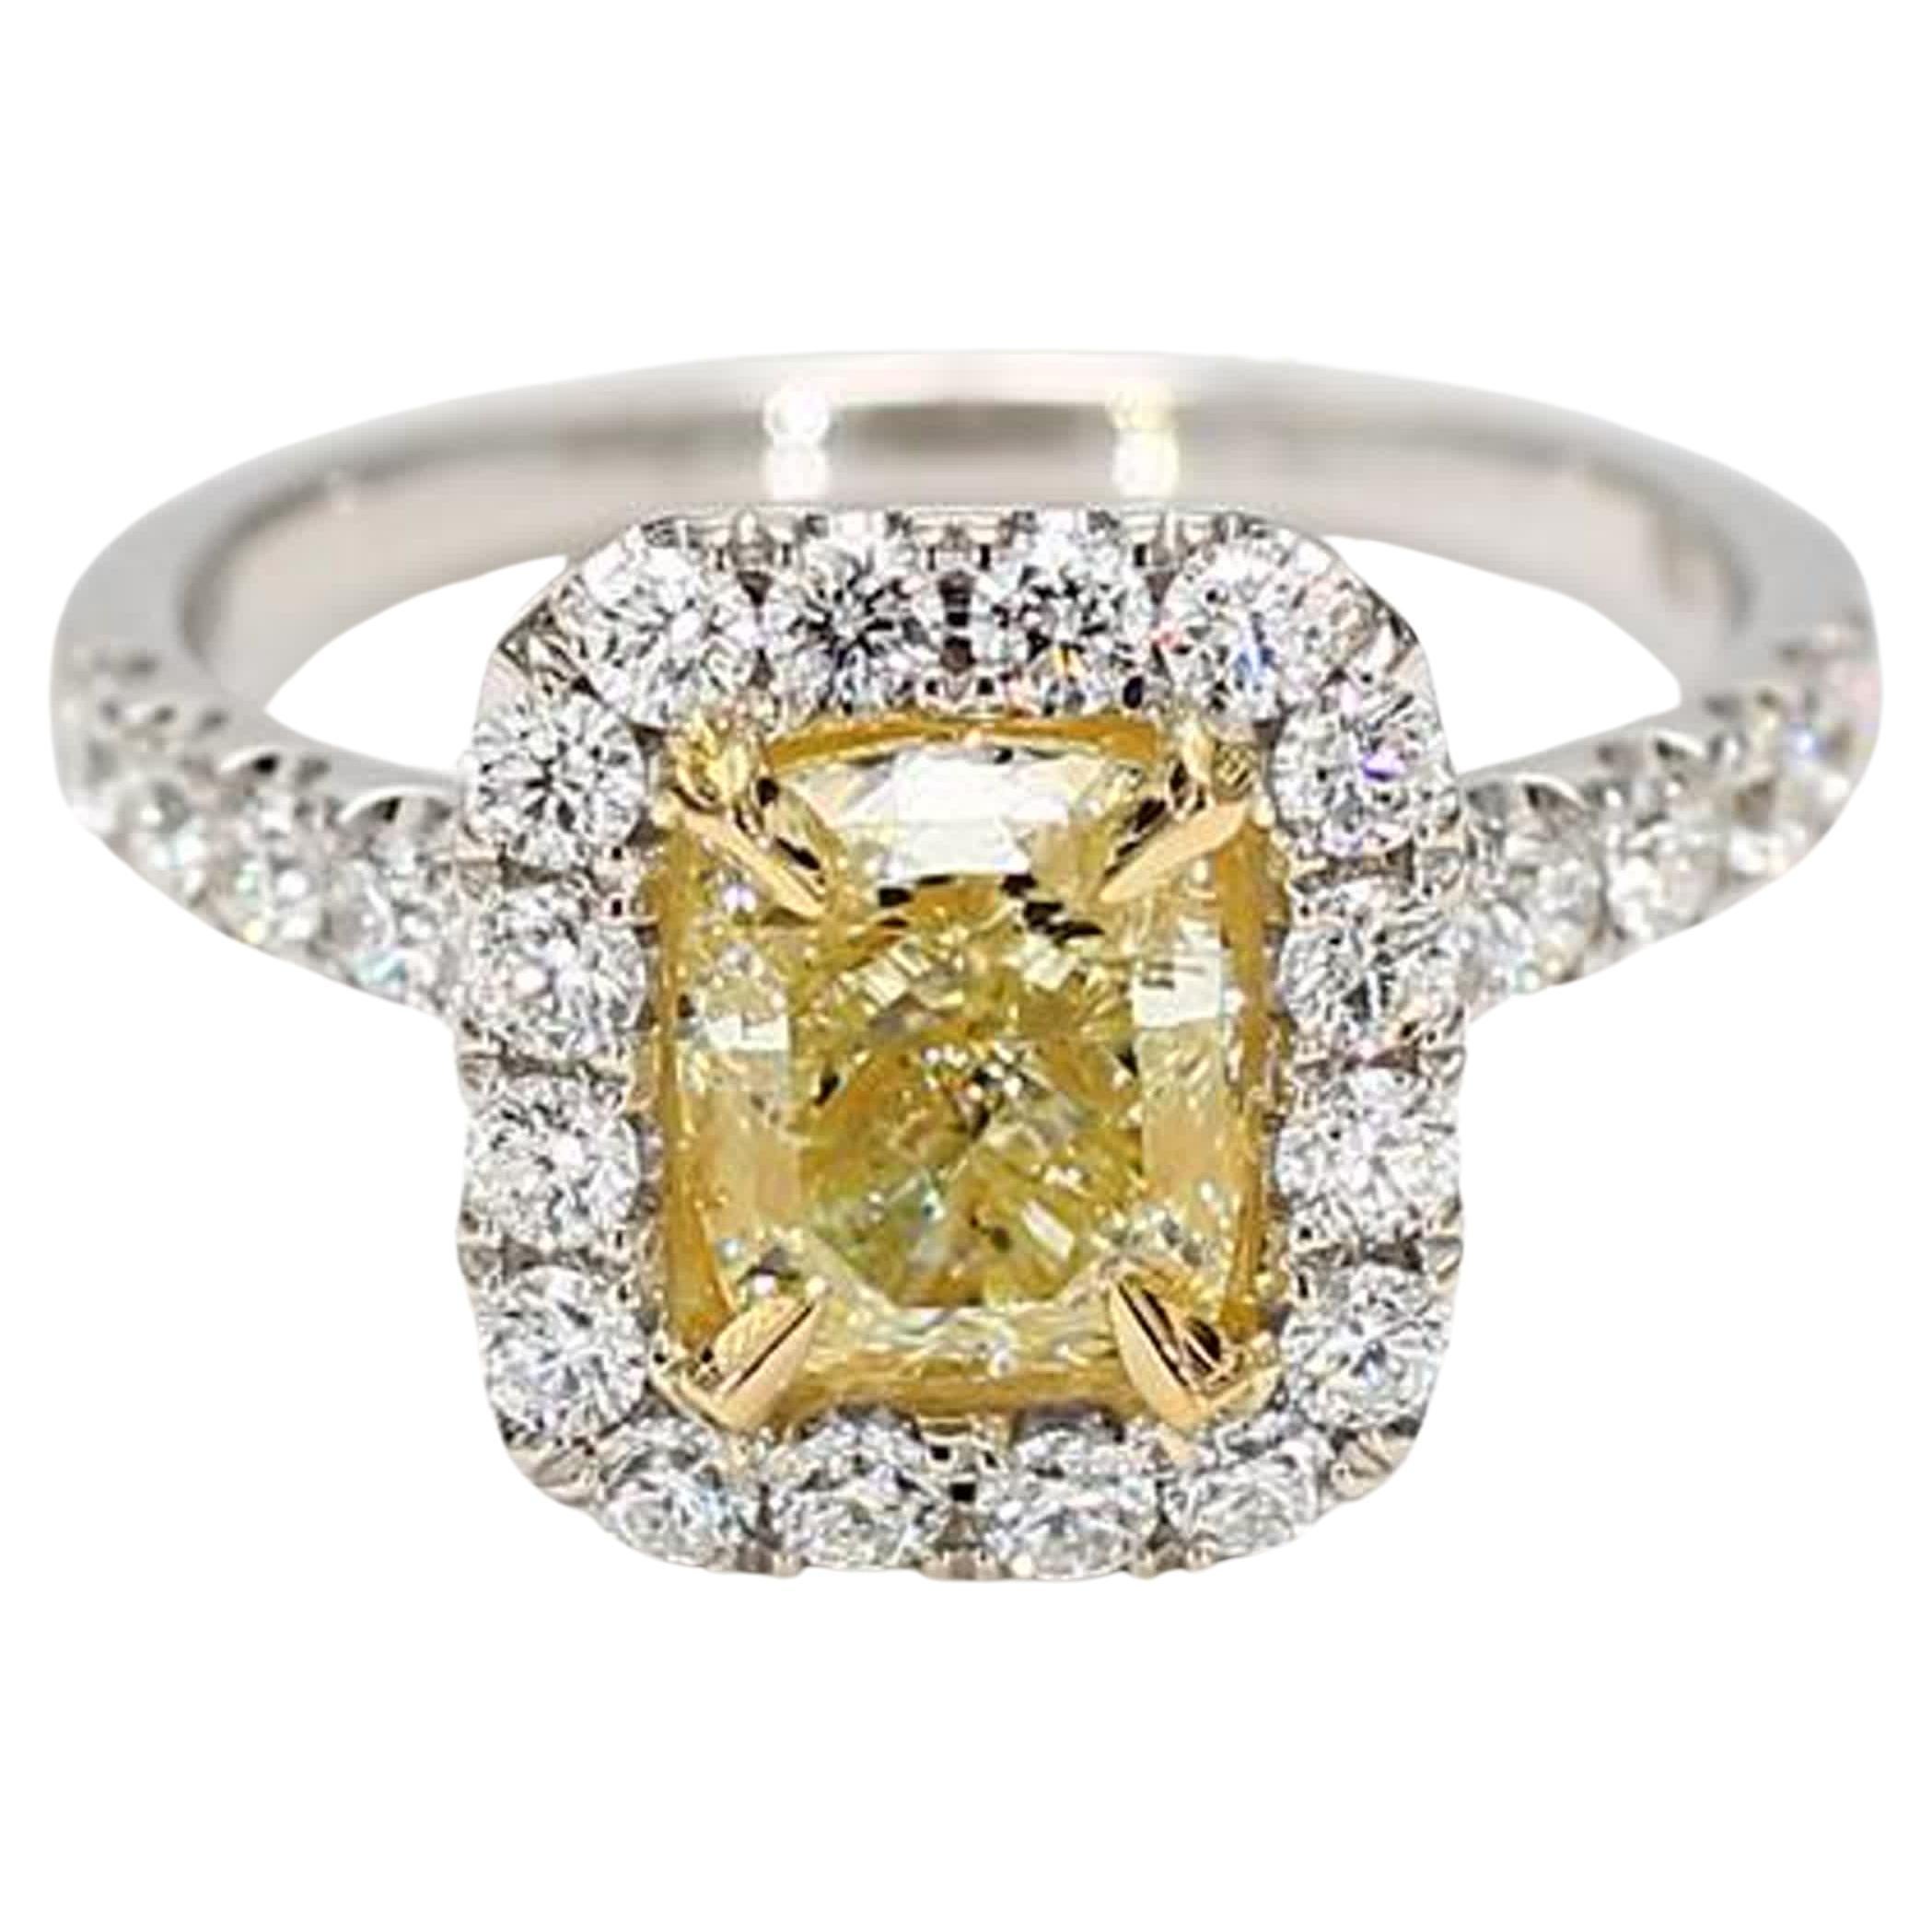 Natürlicher gelber Kissenschliff und weißer Diamant 2.42 Karat TW Gold Cocktail-Ring